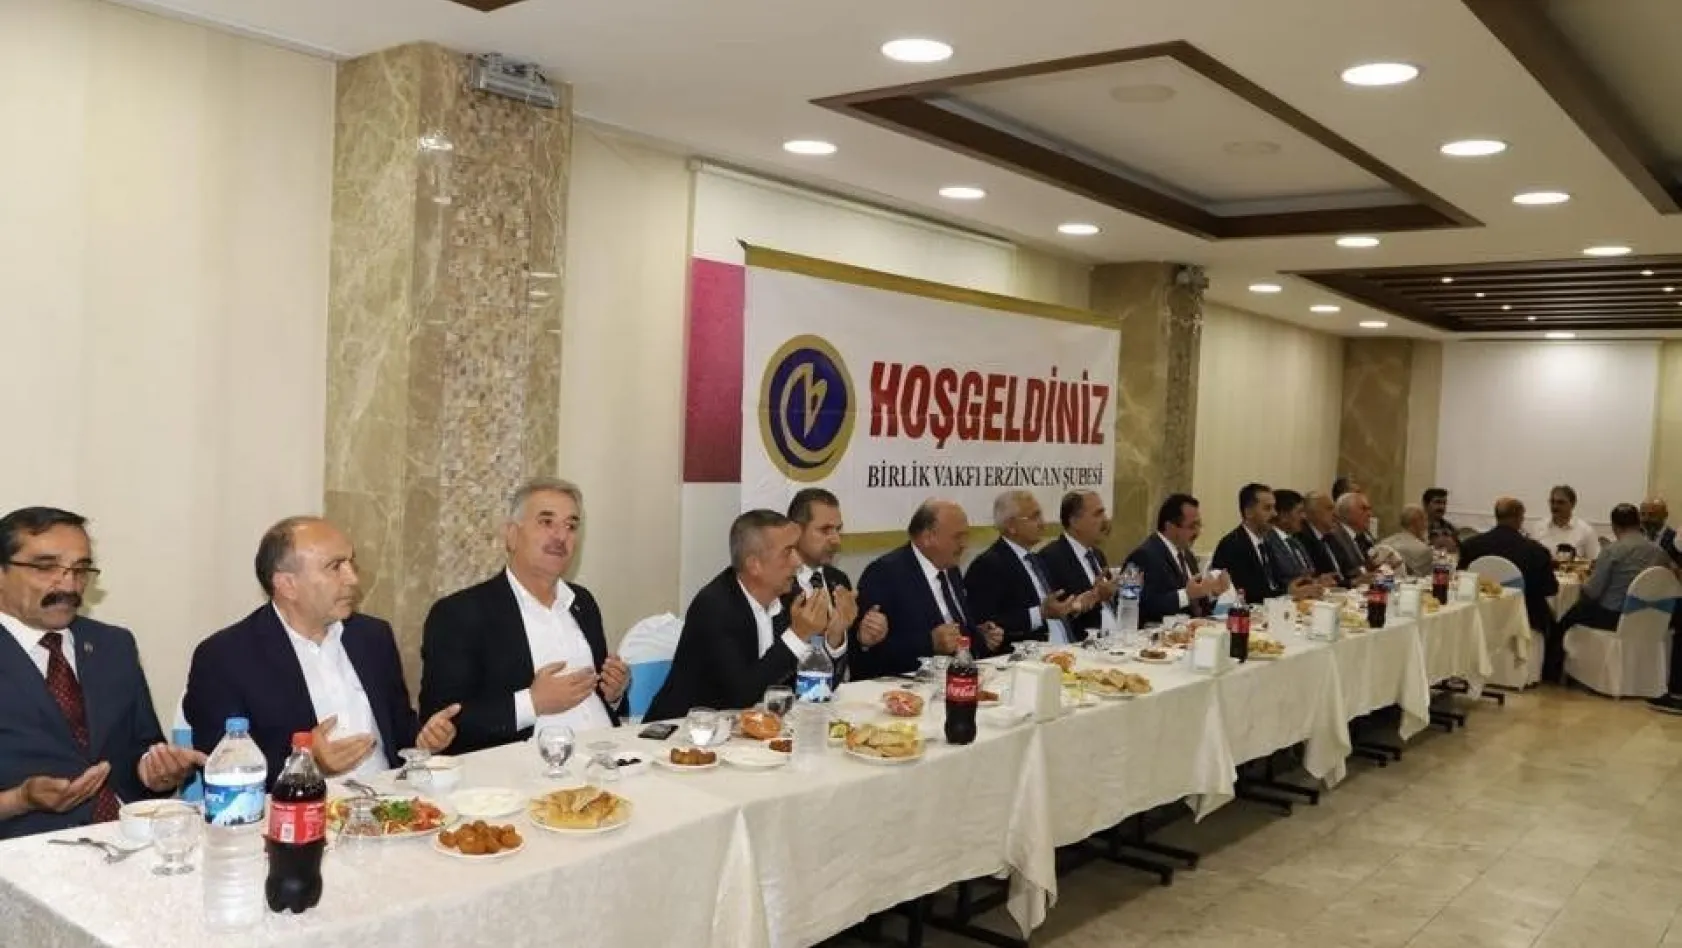 Birlik Vakfı Erzincan Şubesi'nden iftar programı
